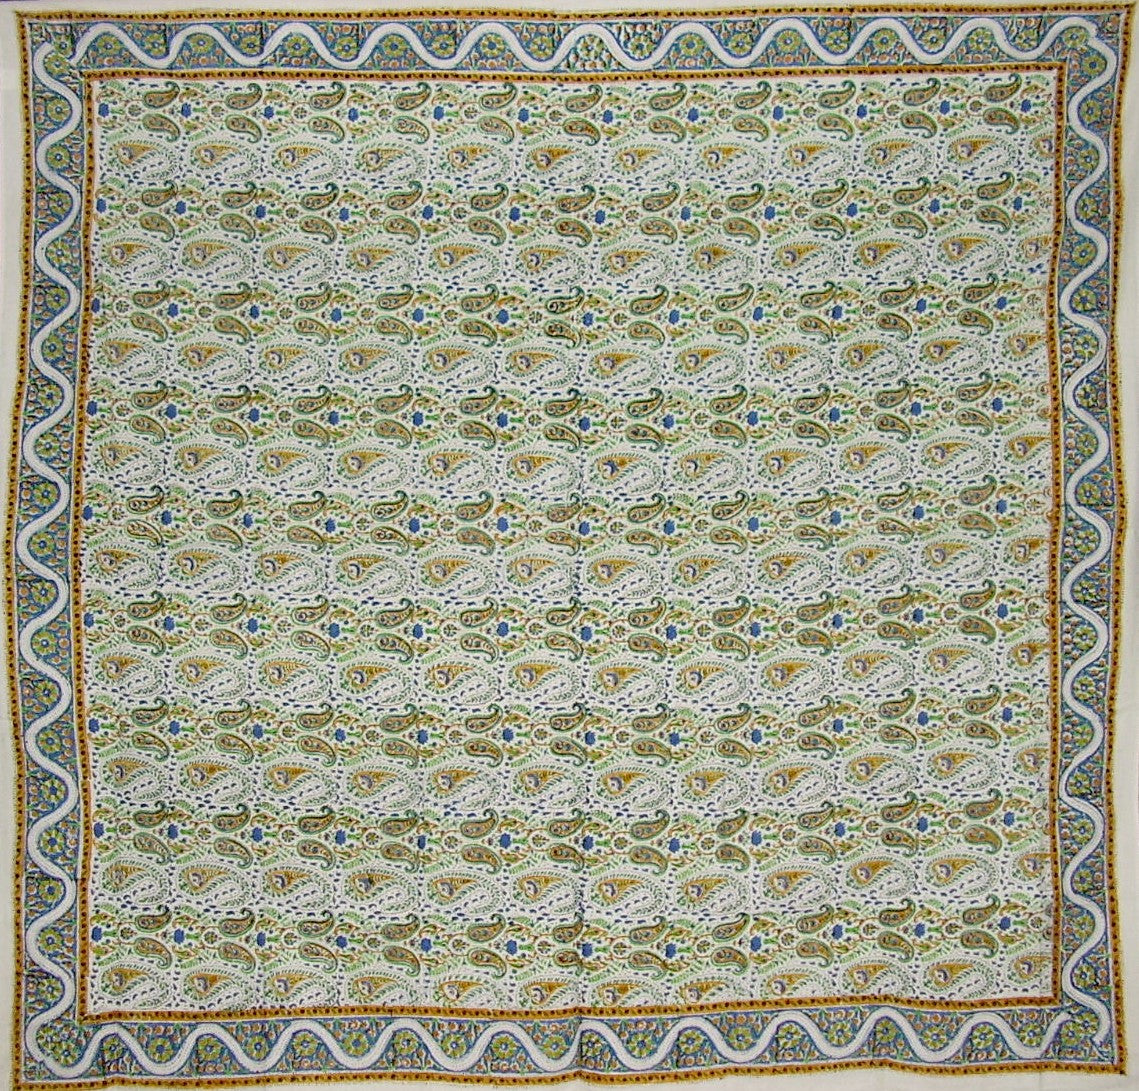 Handblockbedruckte quadratische Tischdecke aus Baumwolle mit Blumenmuster, 72" x 72"